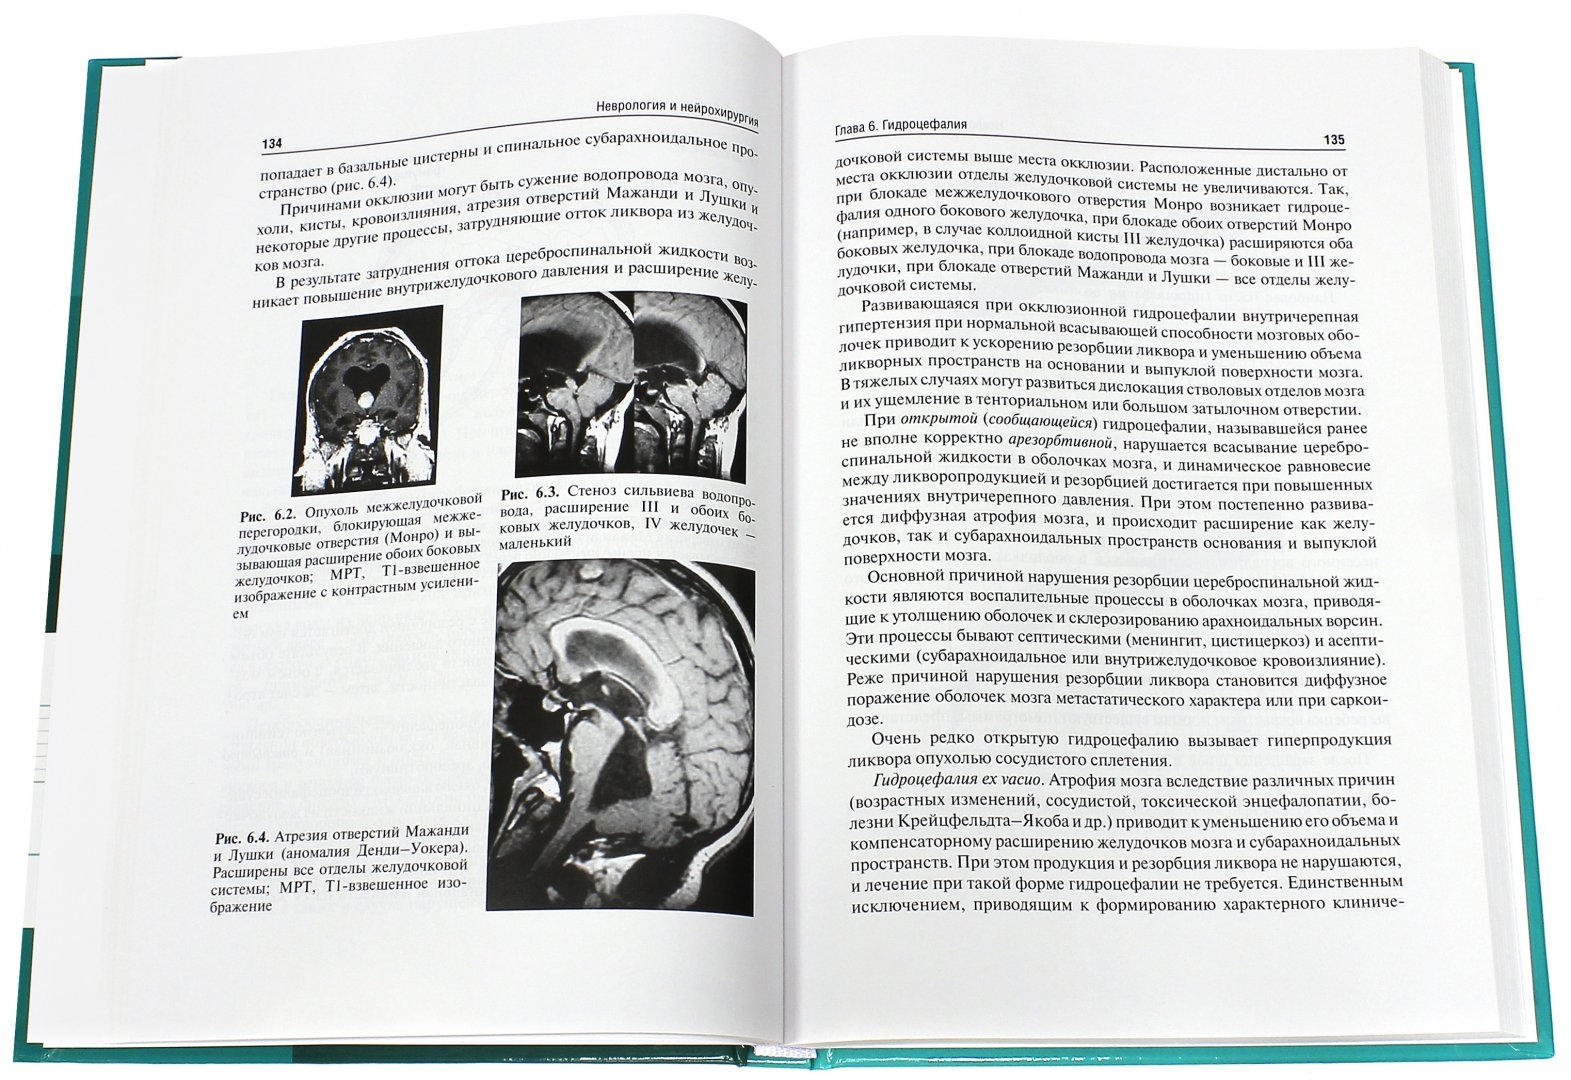 Иллюстрация 1 из 6 для Неврология и нейрохирургия. Учебник. В 2-х томах. Том 2. Нейрохирургия - Гусев, Коновалов, Скворцова | Лабиринт - книги. Источник: Лабиринт